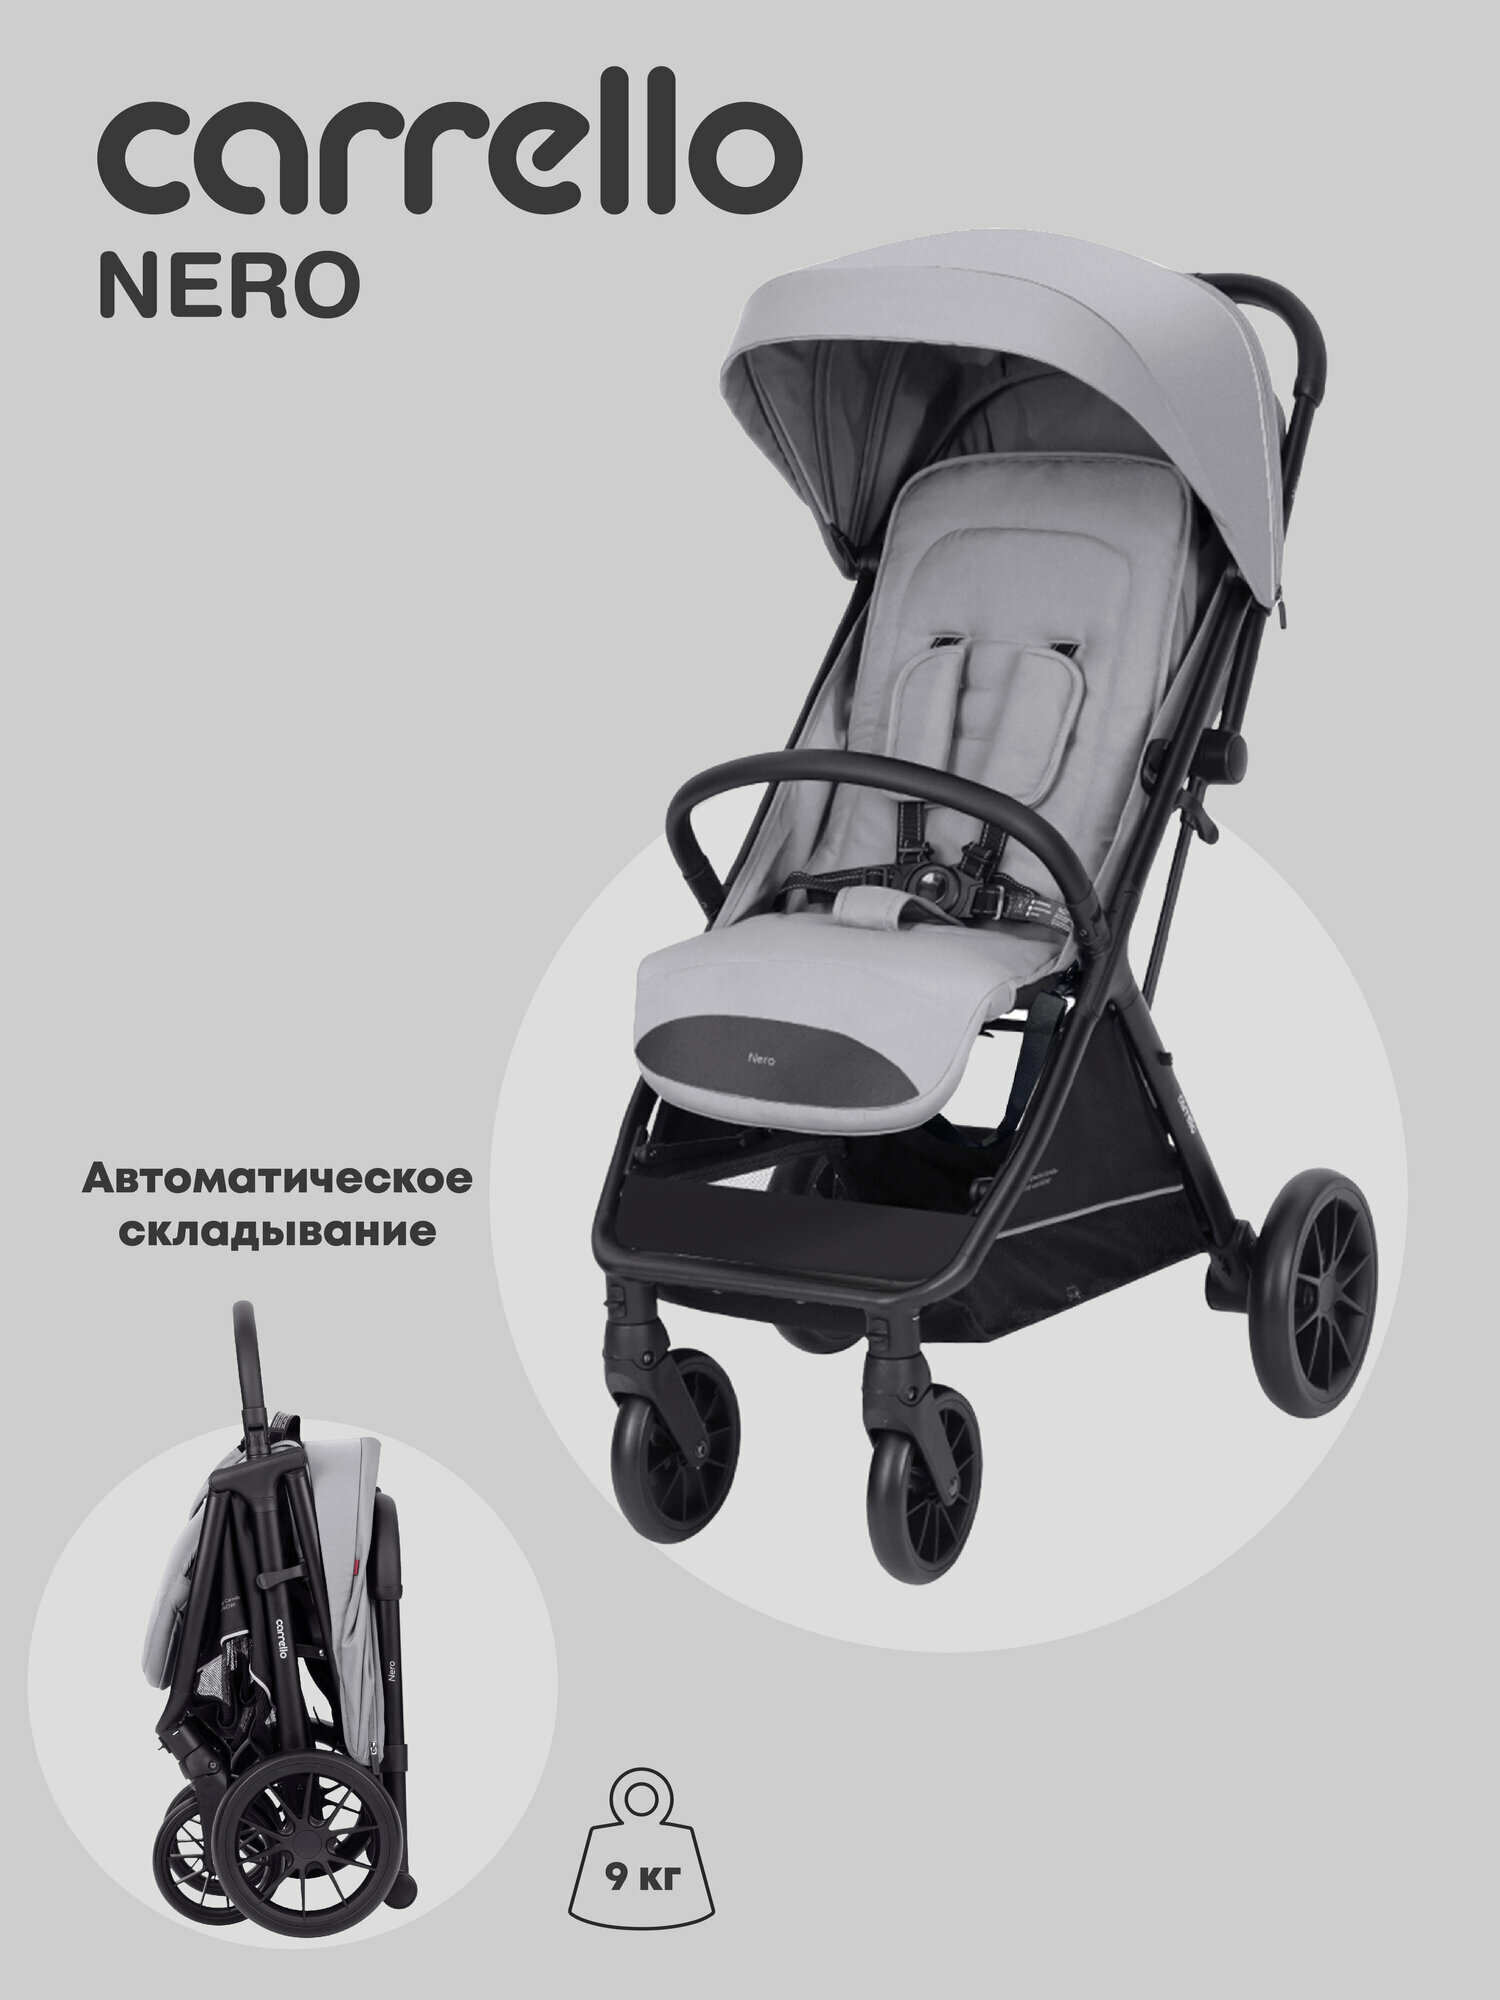 Коляска прогулочная детская CARRELLO Nero, легкая универсальная коляска , светло-серый